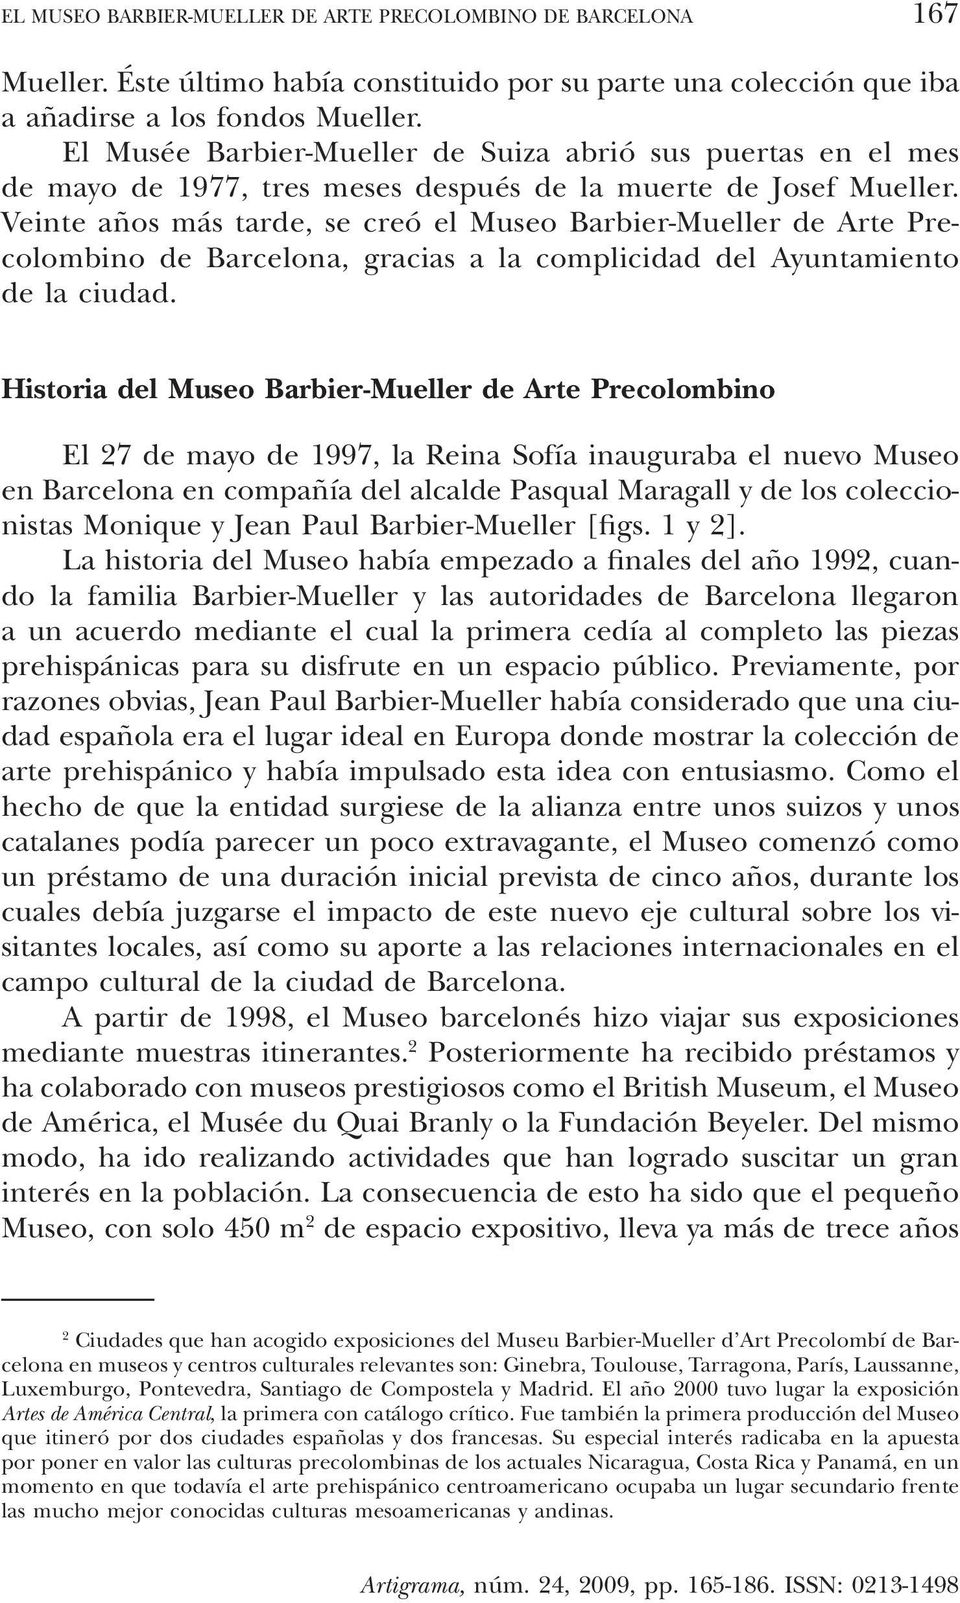 El Museo Barbier-Mueller Arte Precolombino de Barcelona - PDF Descargar libre